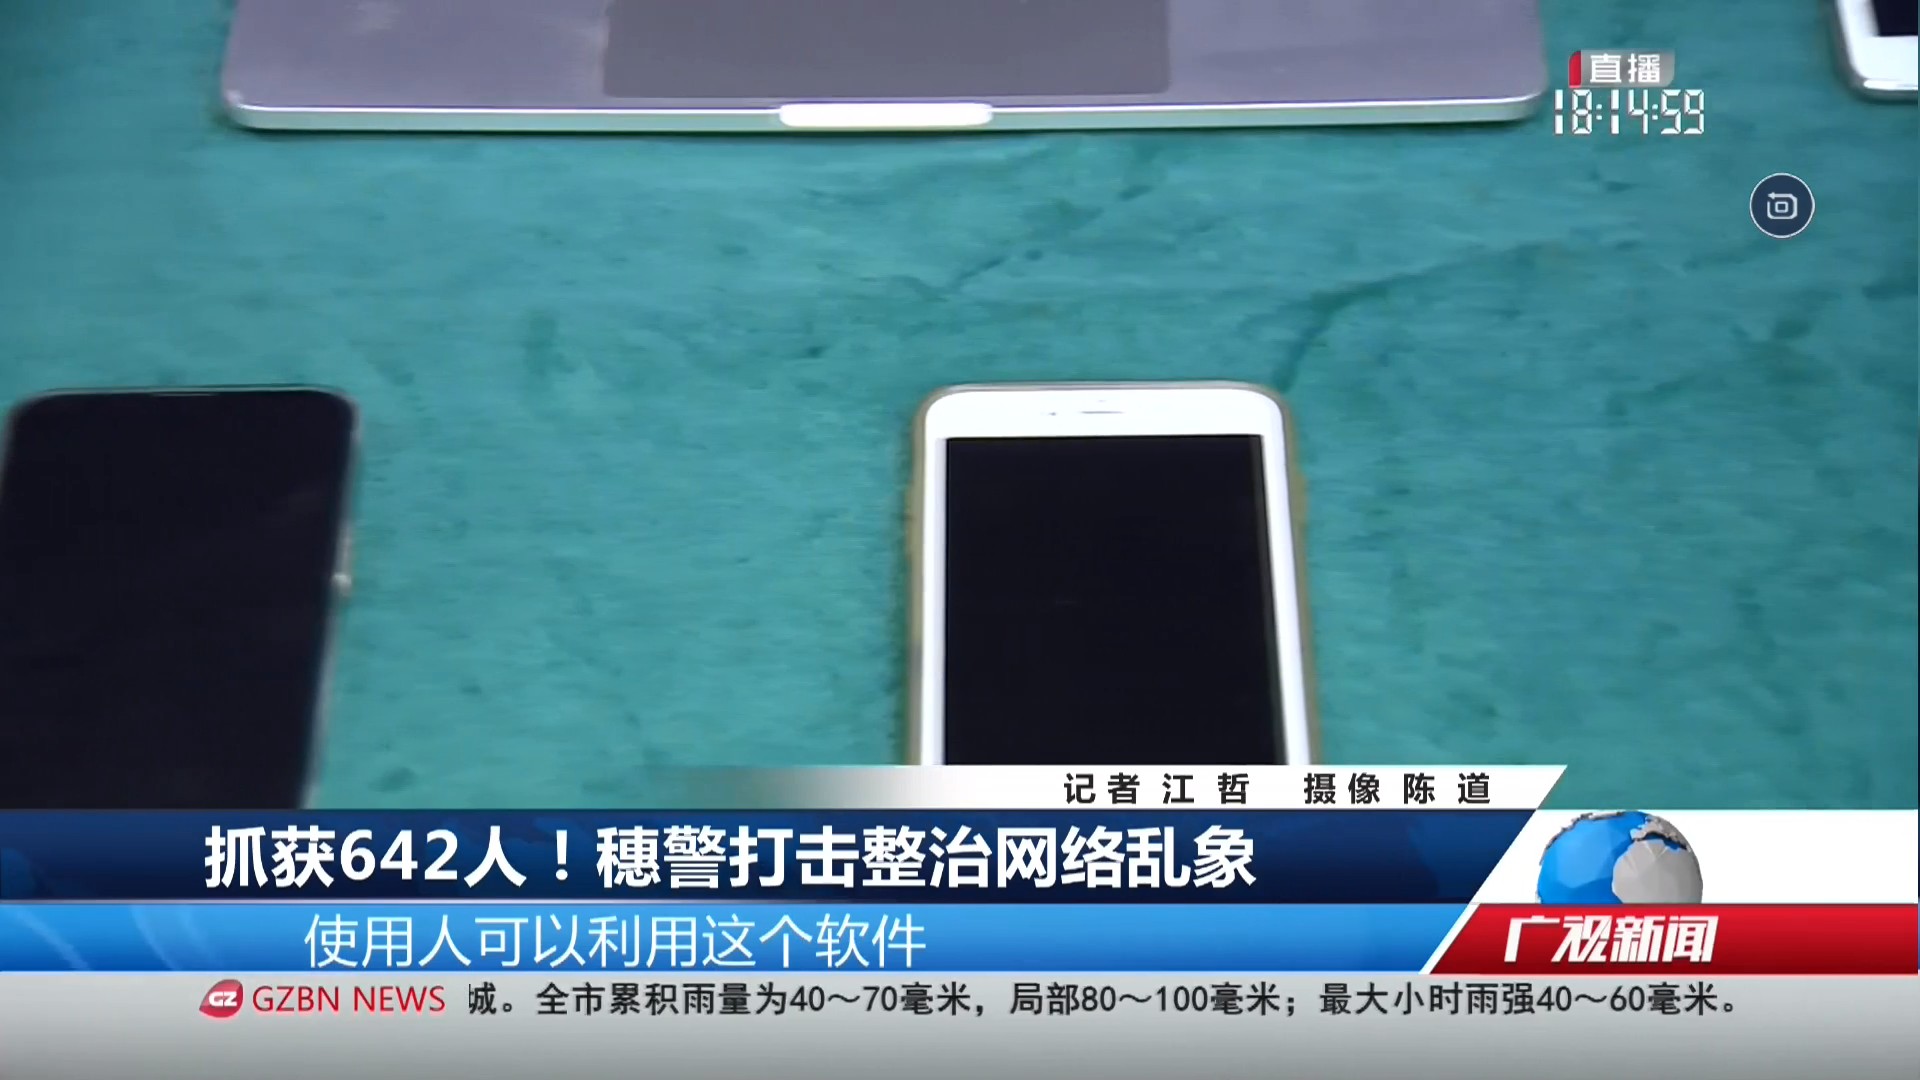 广州台综合频道 广视新闻 抓获642人！穗警打击整治网络乱象